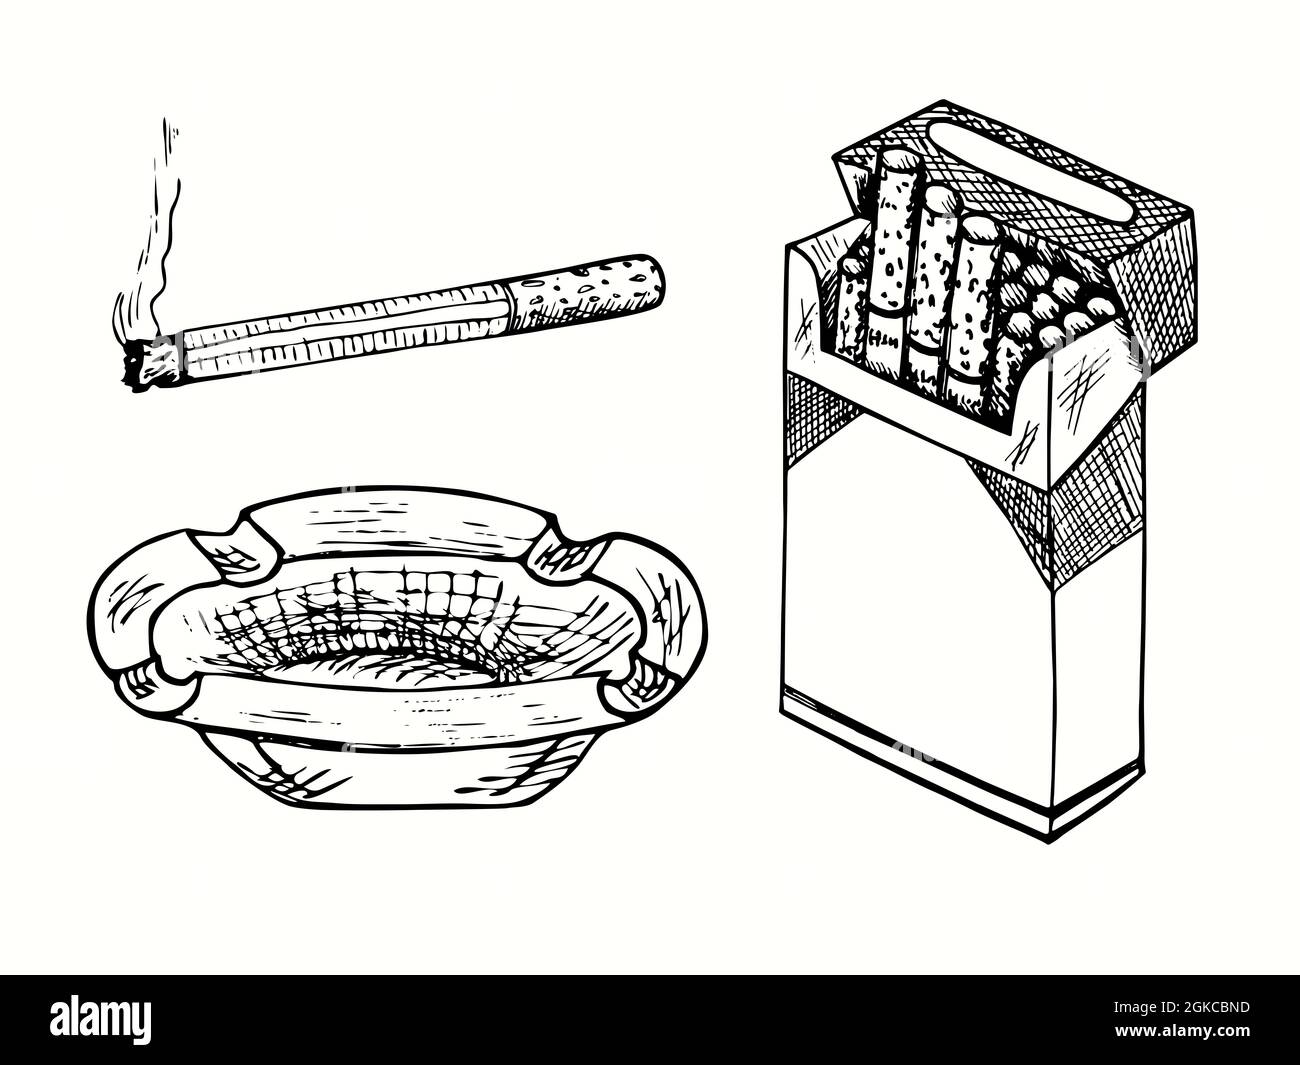 Cendrier tiré à la main, cigarette avec lignes de fumée, paquet de  cigarettes ouvert. Illustration de dessin noir et blanc Photo Stock - Alamy